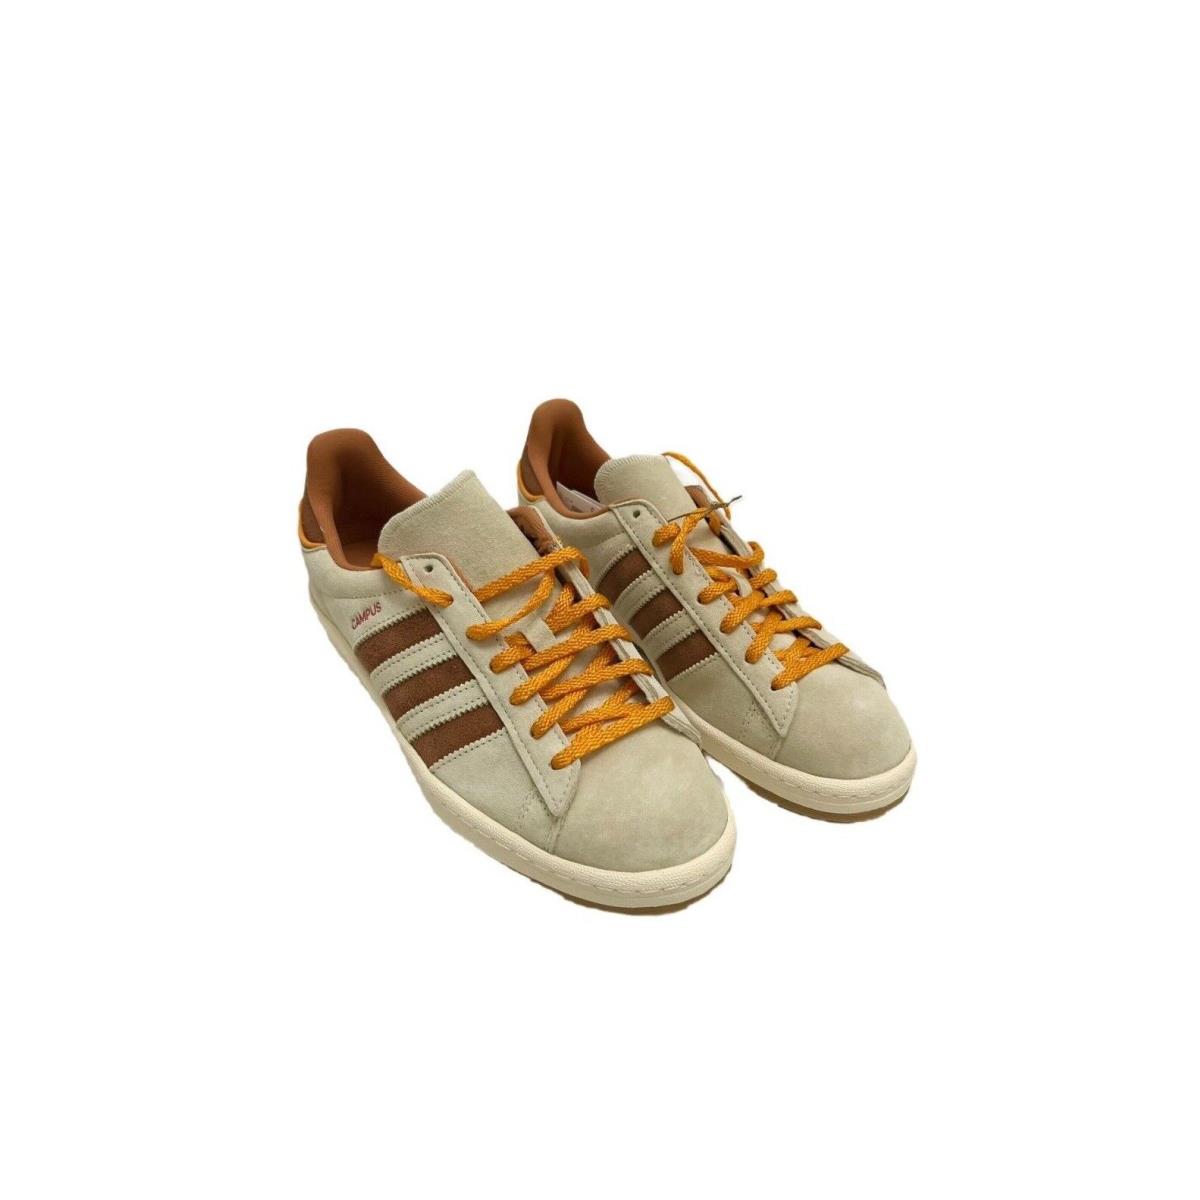 Adidas Men`s Campus 80`s Casual/activewear Shoes - Cream White/Auburn/Eqt Orange